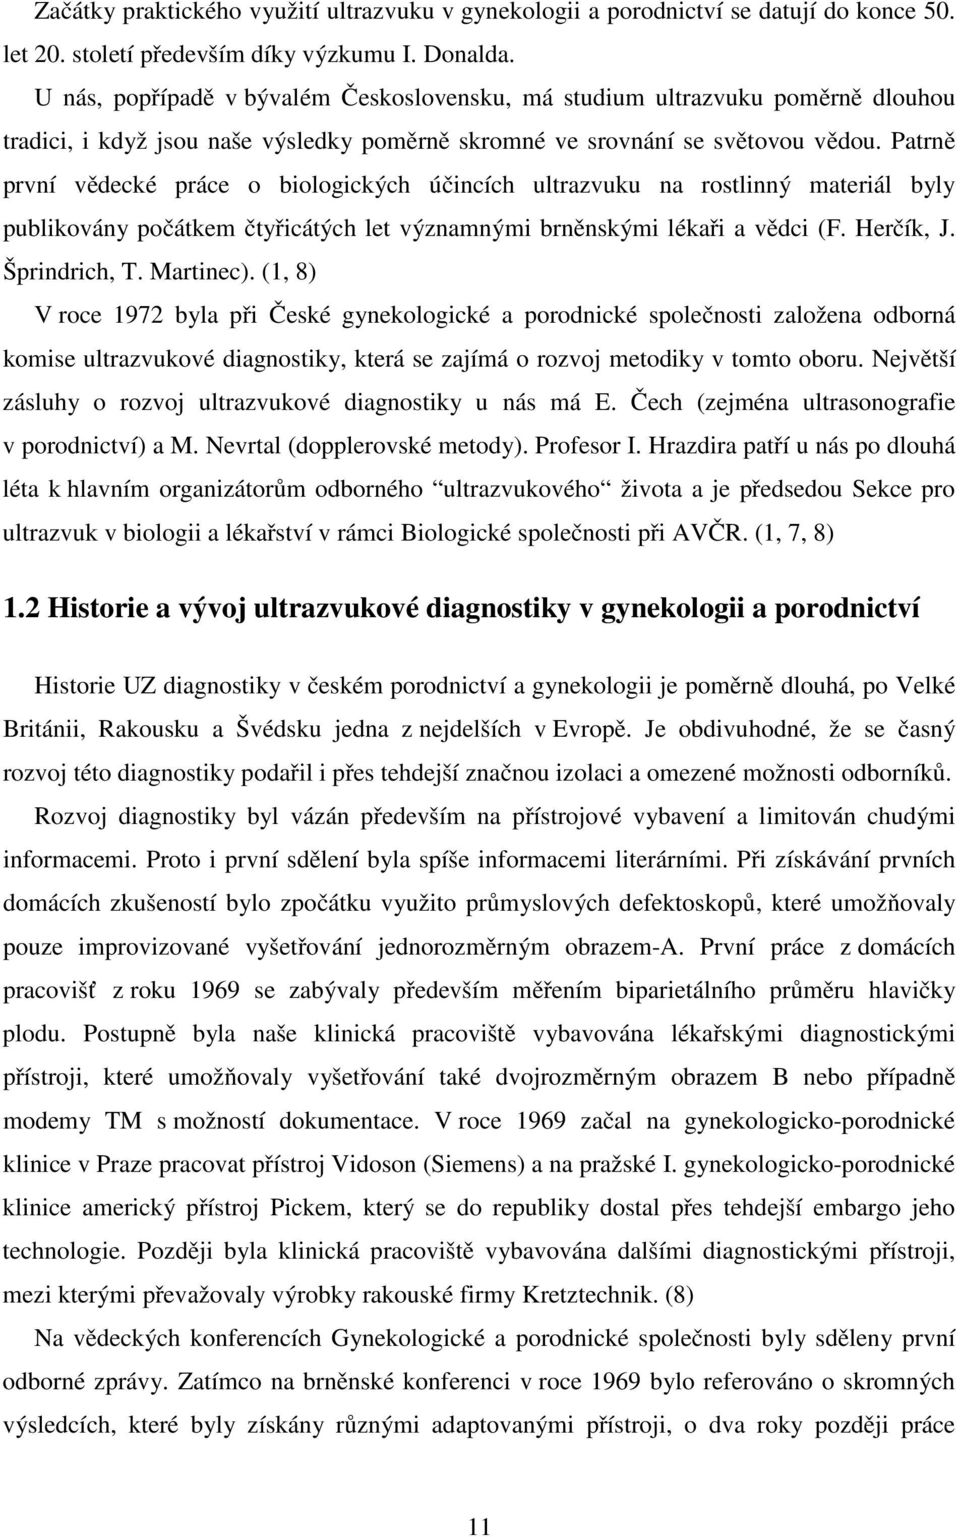 Patrně první vědecké práce o biologických účincích ultrazvuku na rostlinný materiál byly publikovány počátkem čtyřicátých let významnými brněnskými lékaři a vědci (F. Herčík, J. Šprindrich, T.